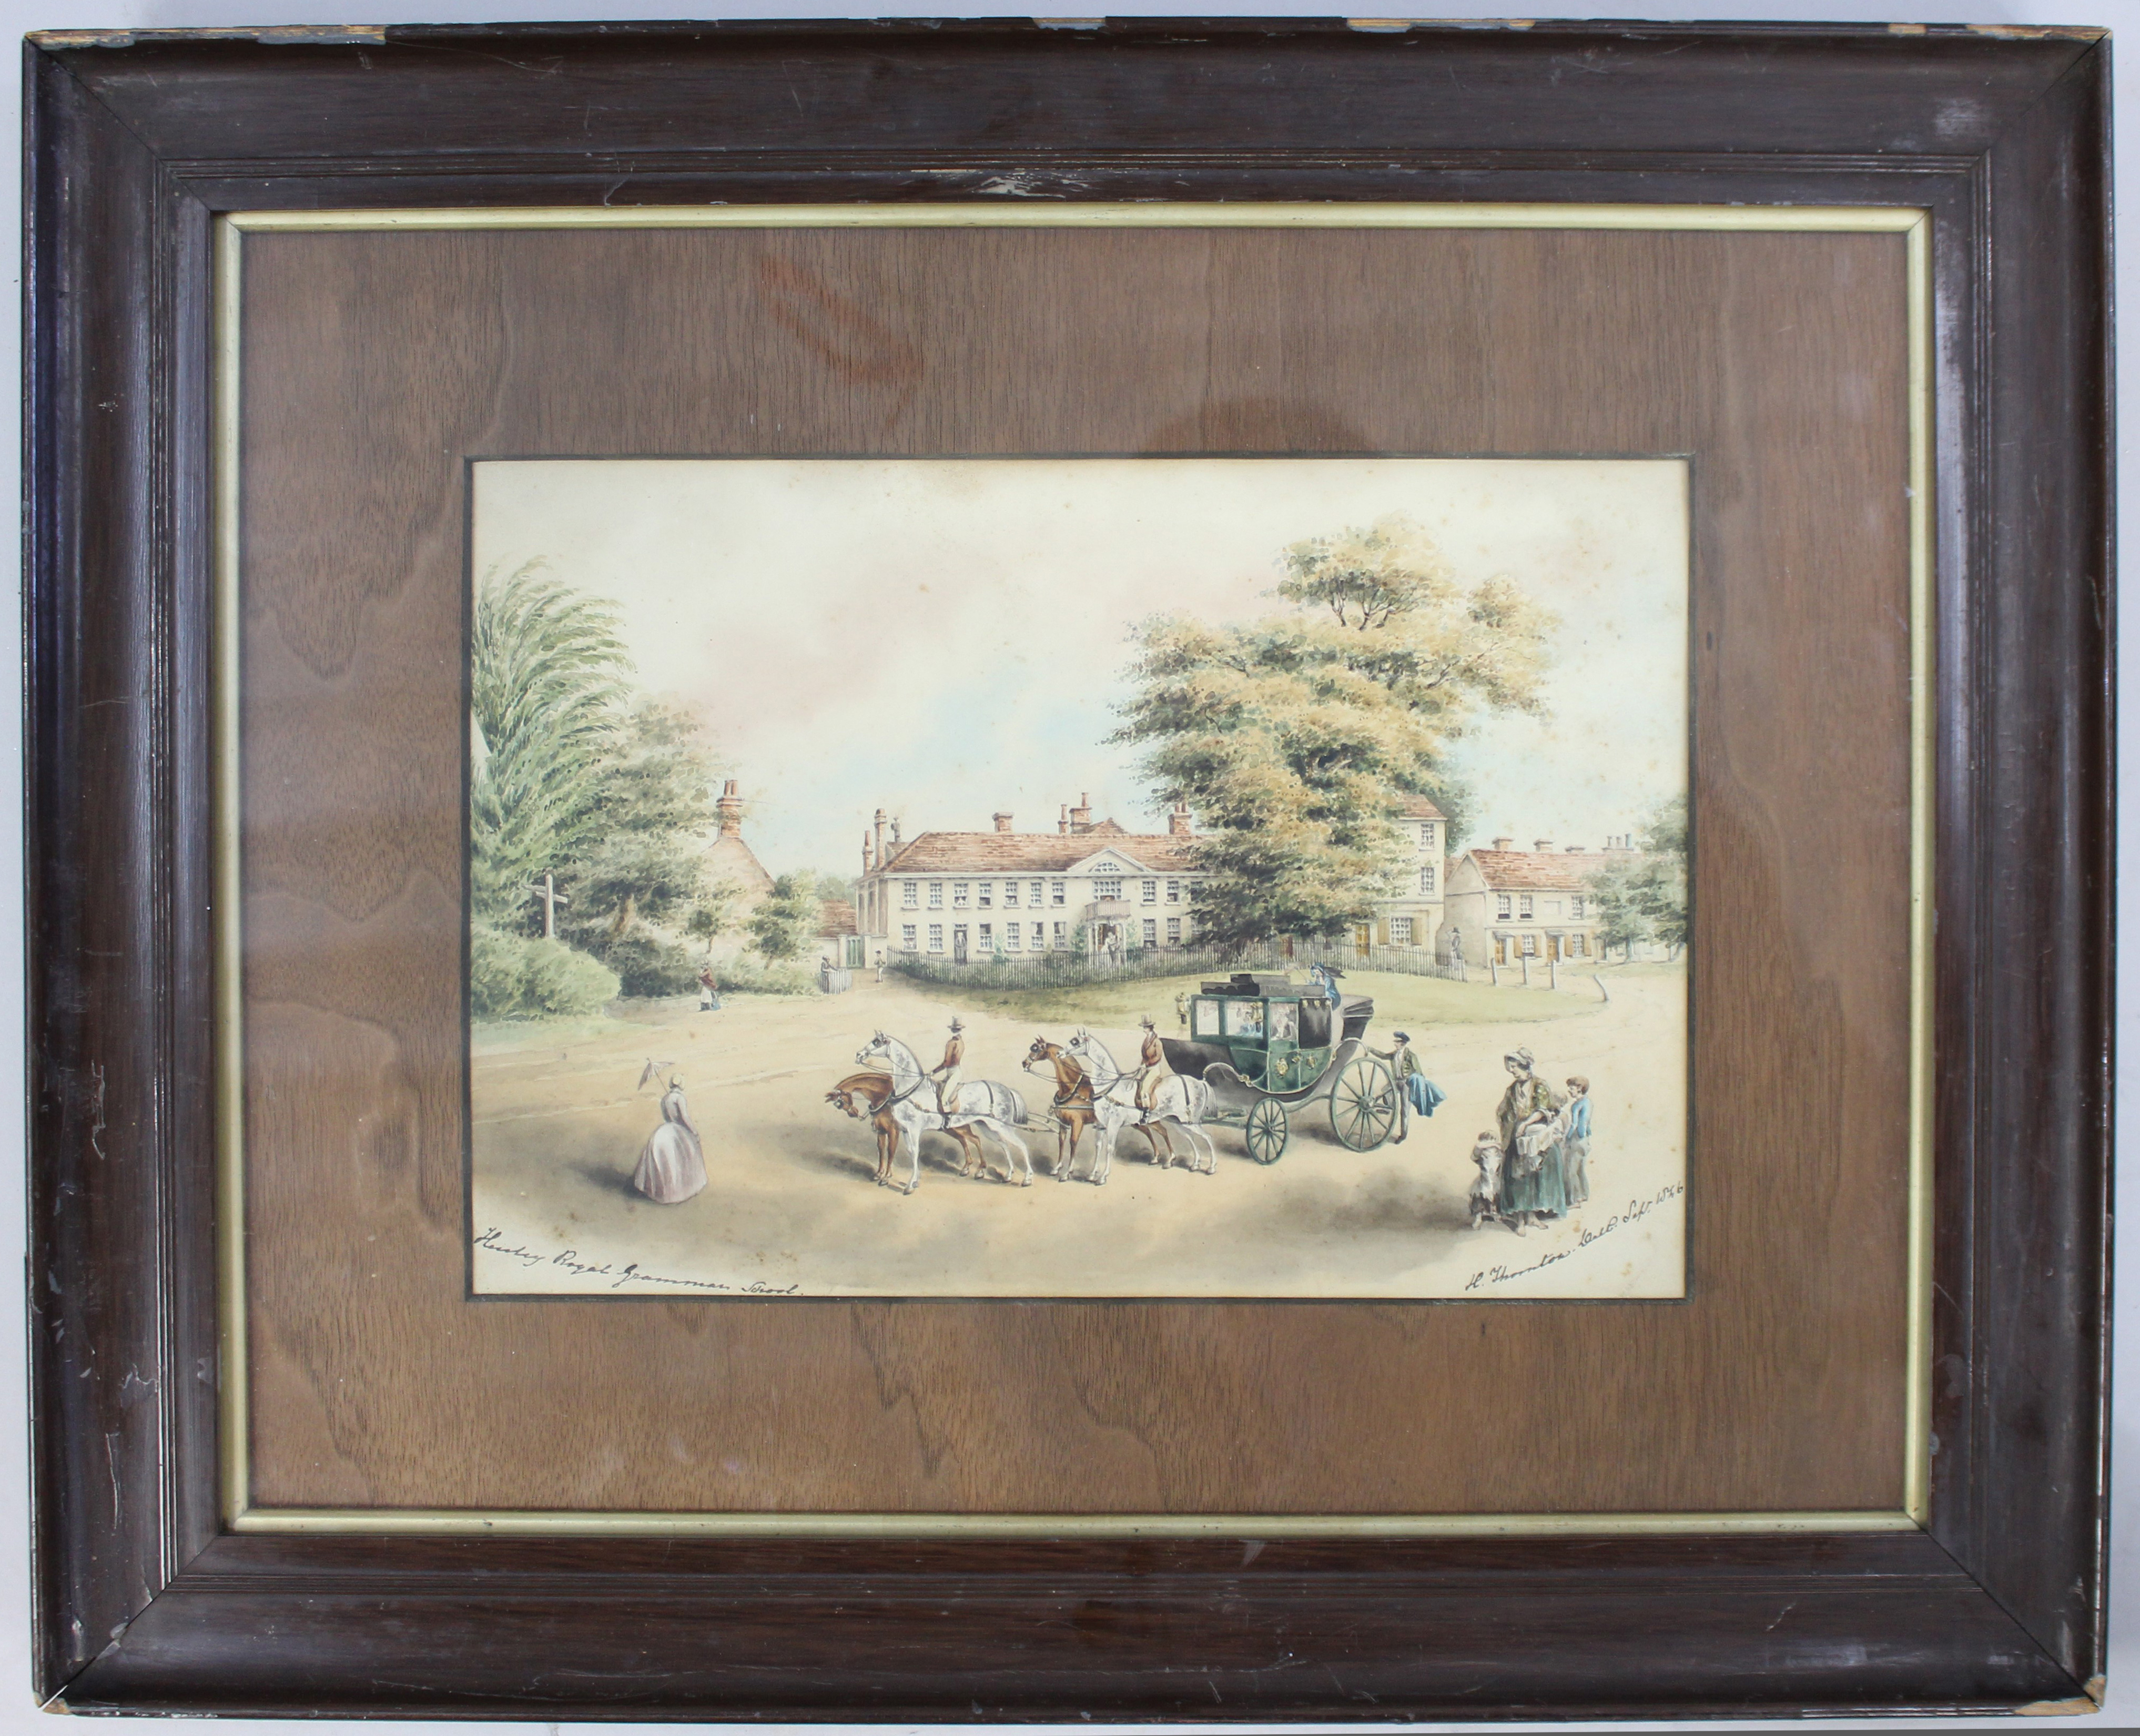 Hadley Royal Grammar School"" Delicate Signed Watercolour 1846